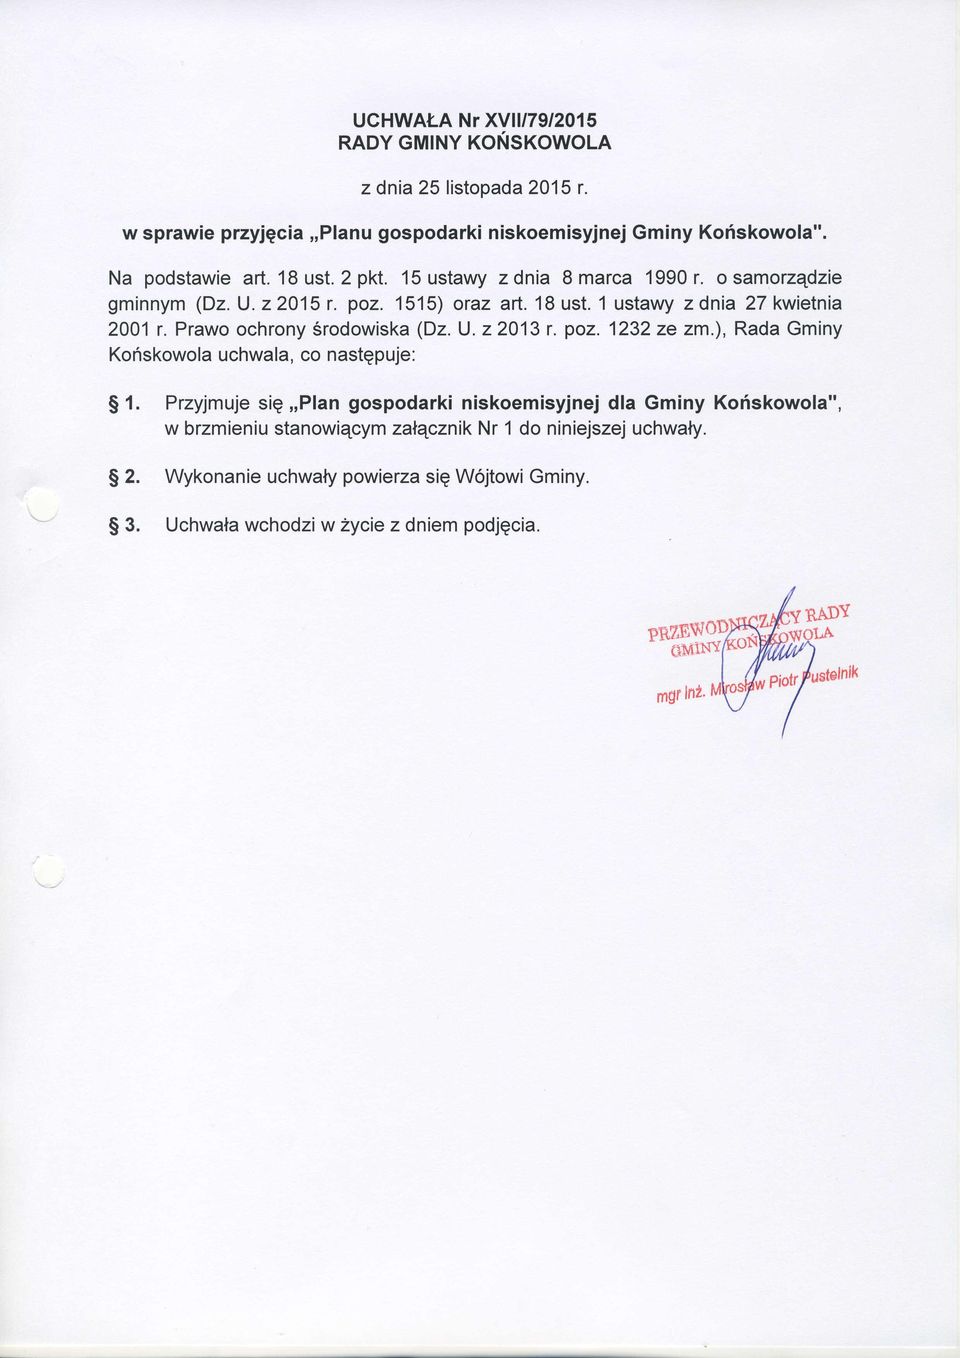 Prawo ochrony Srodowiska (Dz. U.22013 r. poz. 1232 ze zm.), Rada Gminy Kofiskowola uchwala, co nastqpuje: S 1.